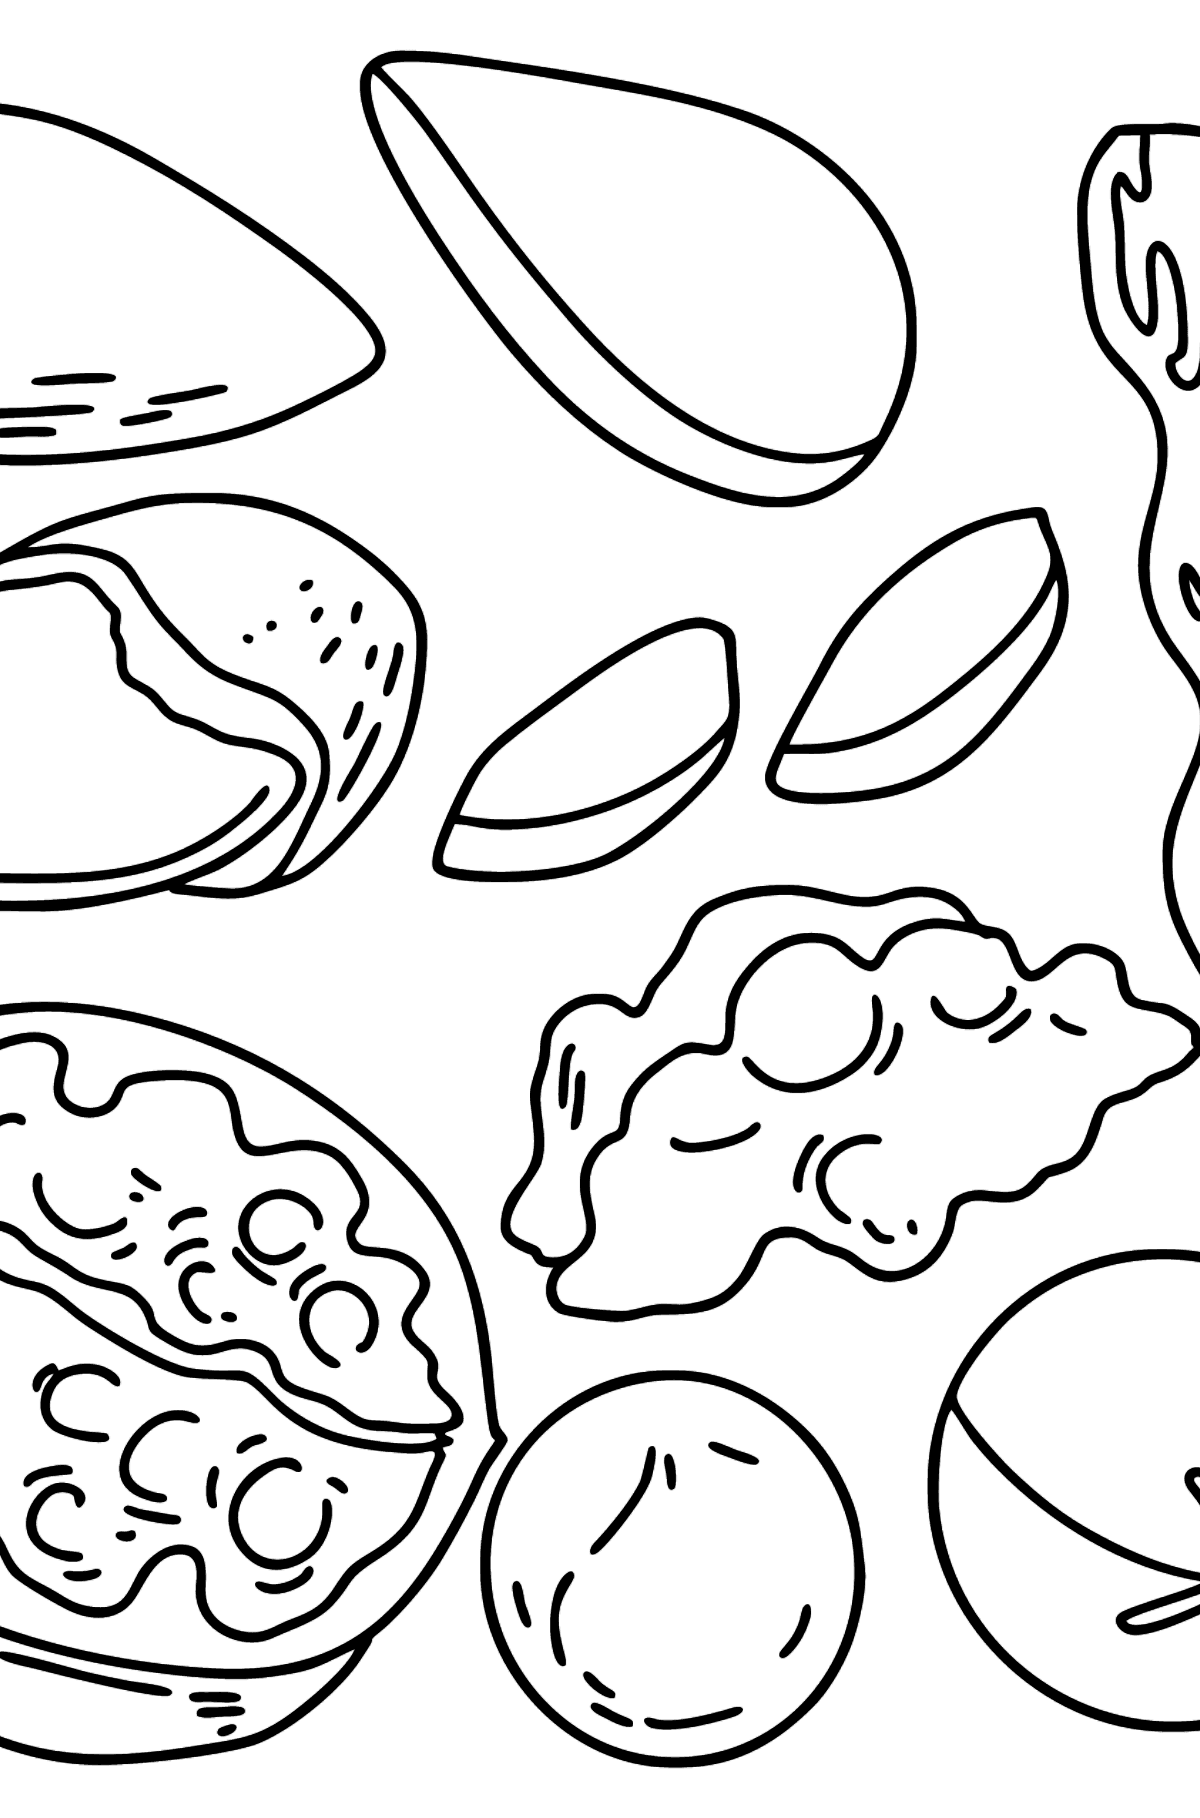 Раскраска орехи: грецкие, макадамия, миндаль и арахис - Картинки для Детей